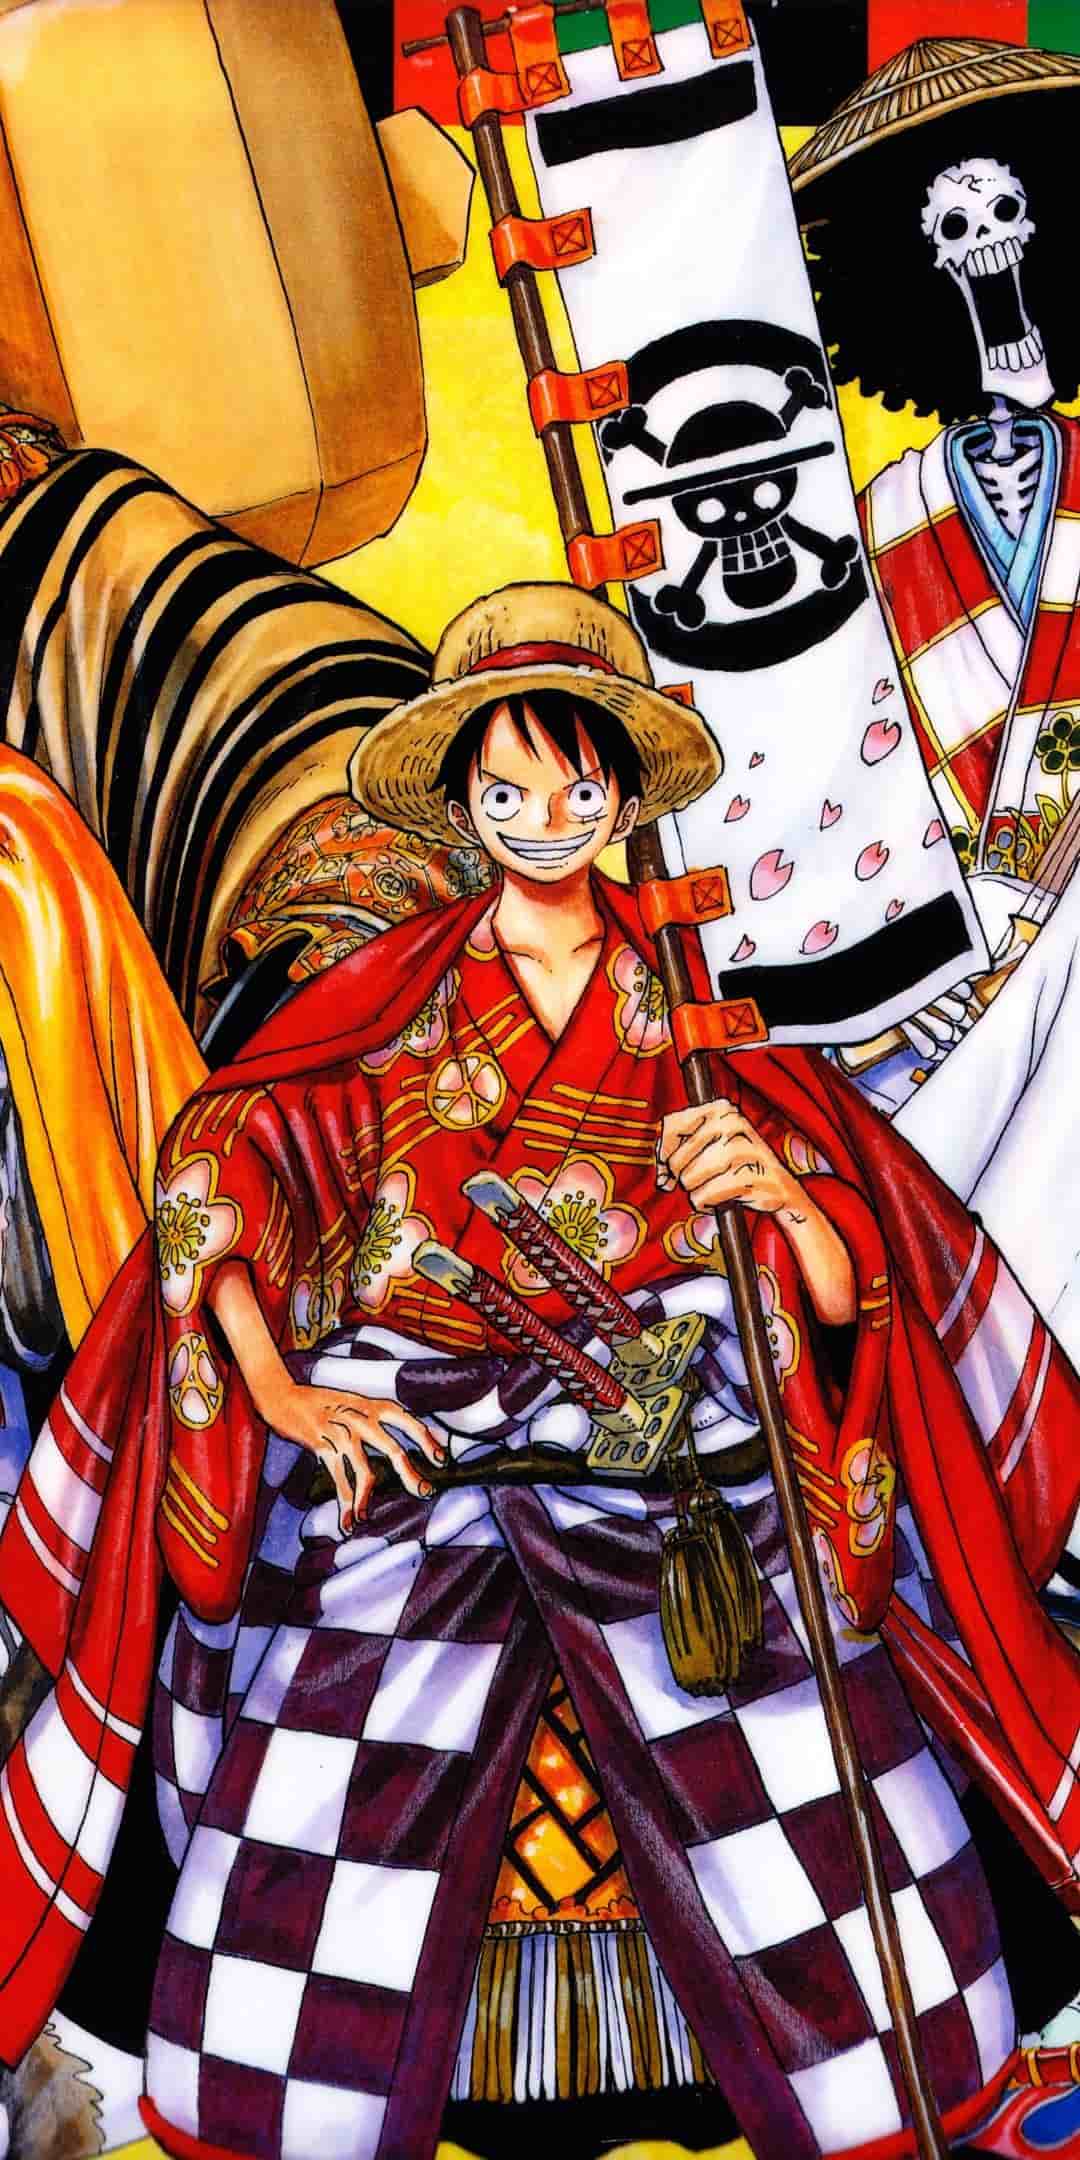 Những bức ảnh anime One Piece ngầu sẽ khiến bạn phải hoàn toàn đam mê với bộ phim nổi tiếng này. Hãy cùng khám phá và trải nghiệm các bức ảnh đẹp mắt về các nhân vật trong One Piece mà không bao giờ bạn thấy chán.